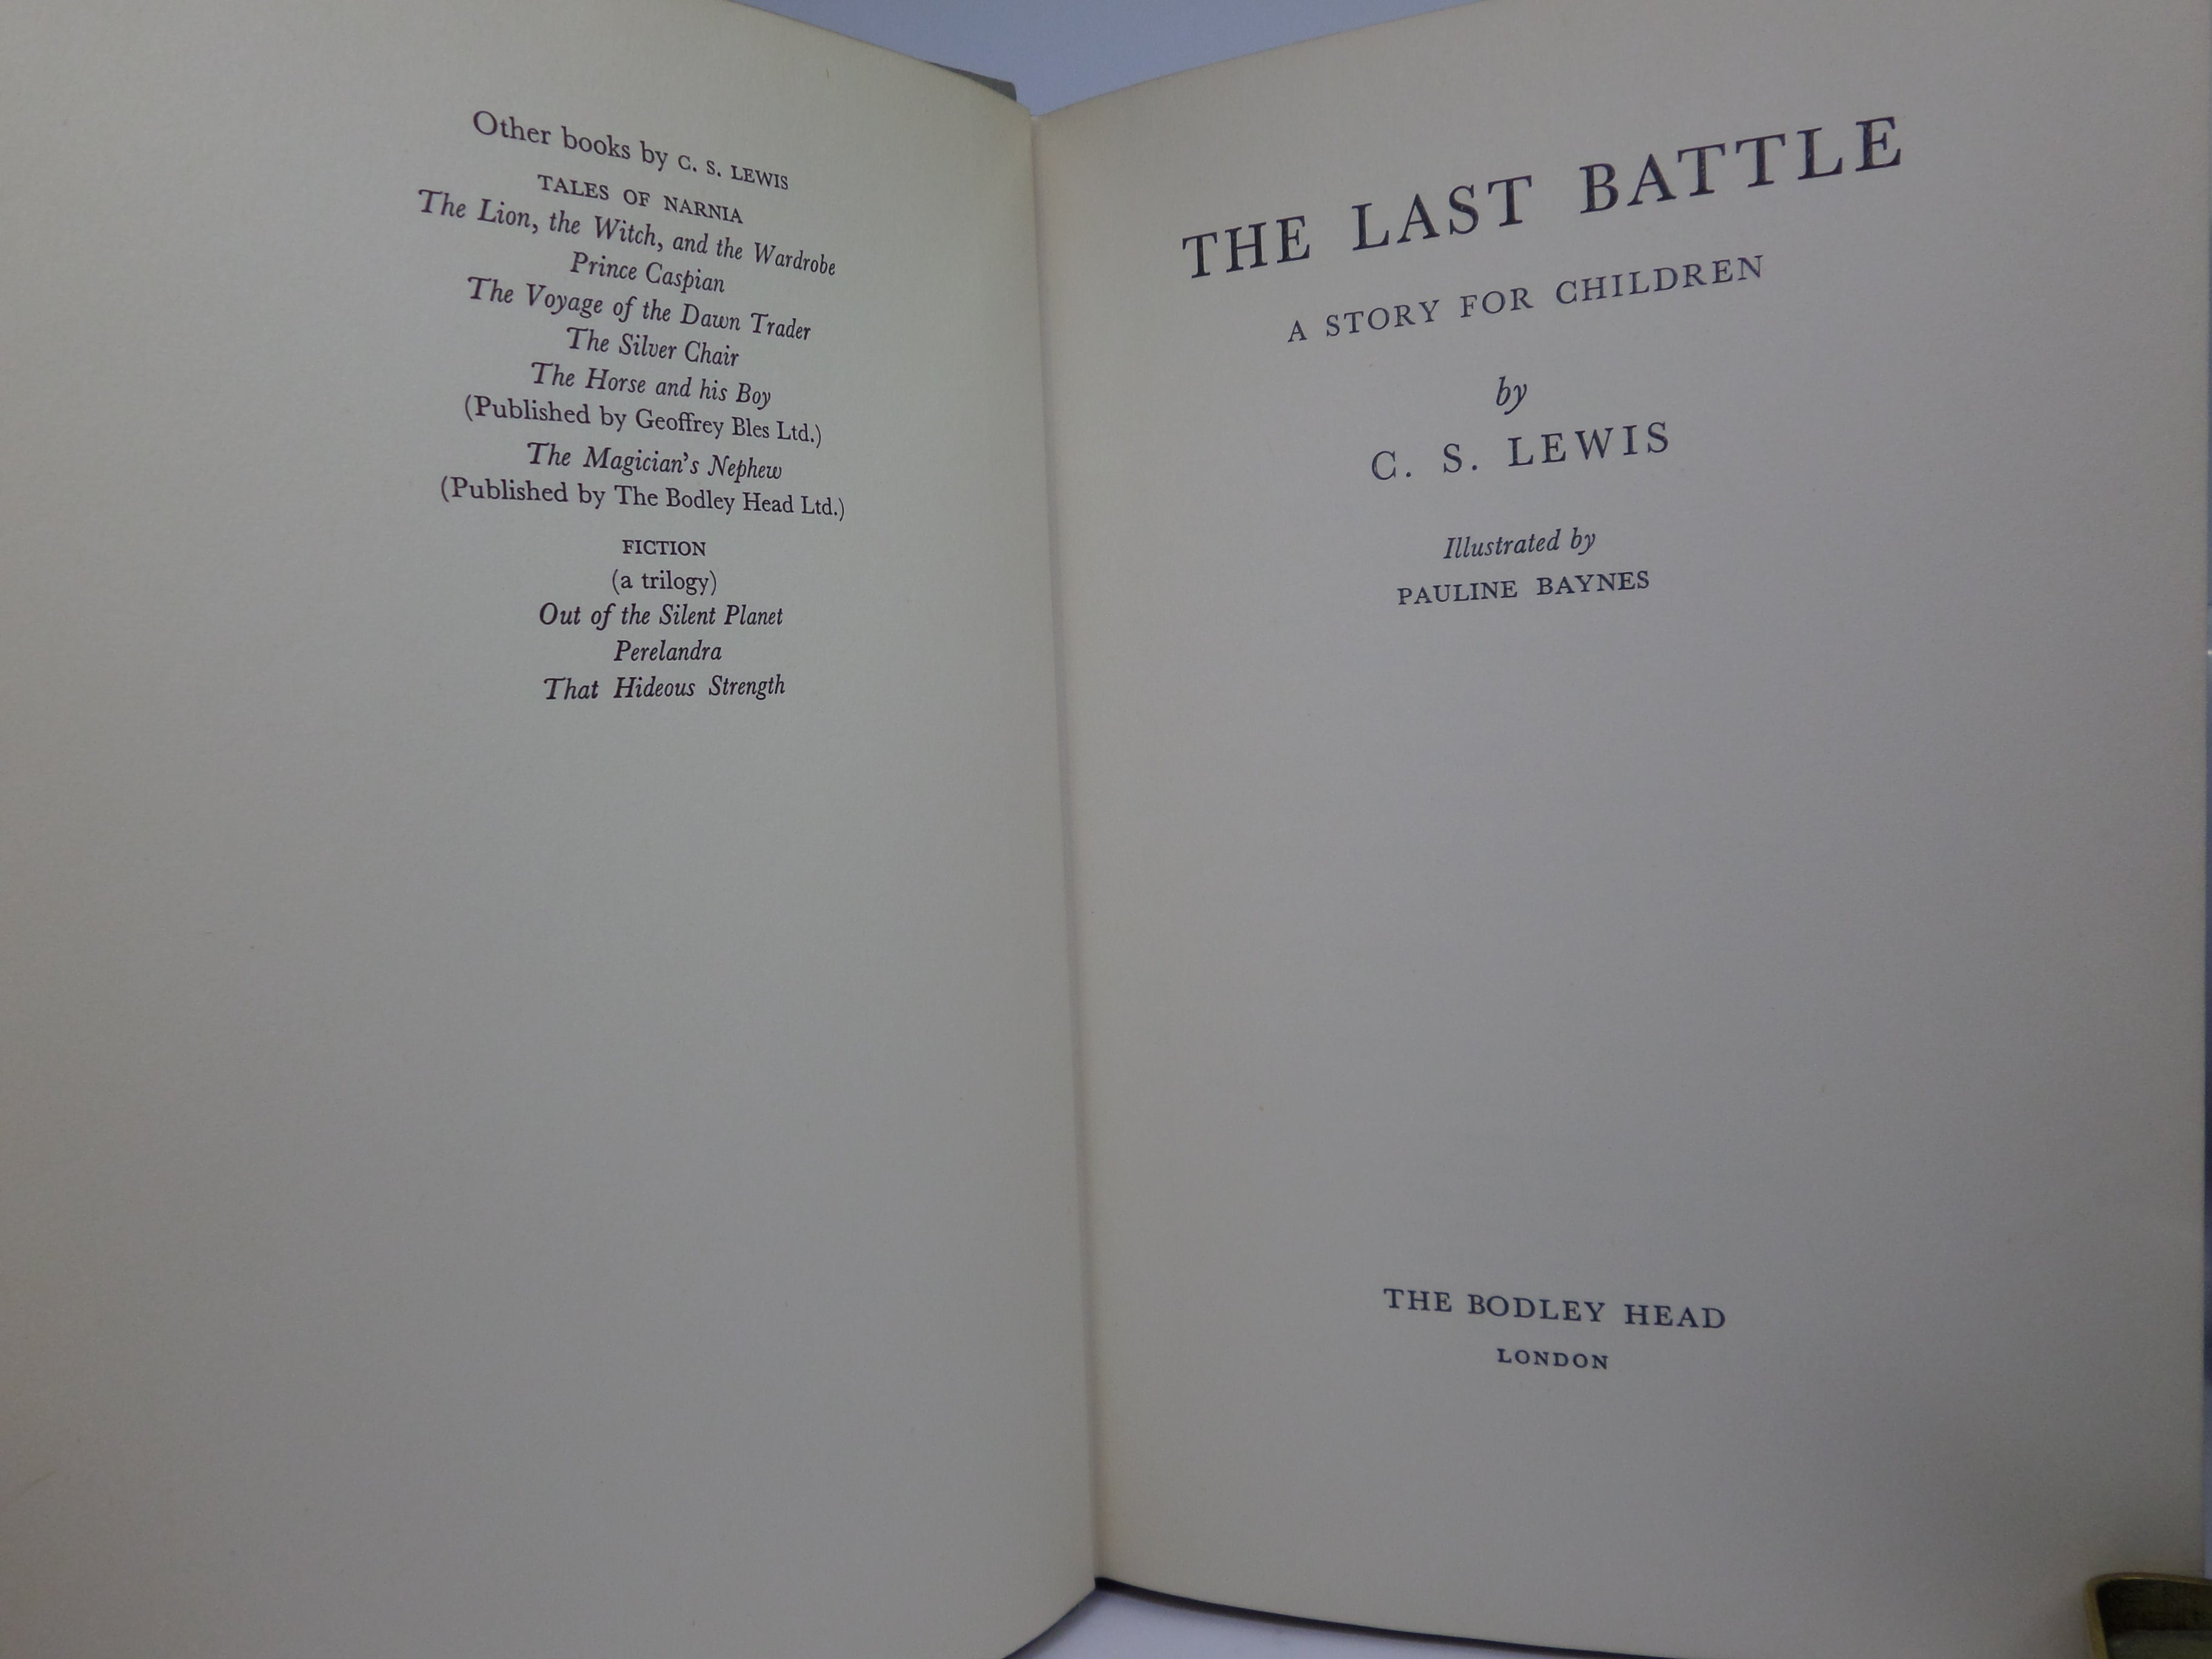 THE LAST BATTLE BY C. S. LEWIS 1961